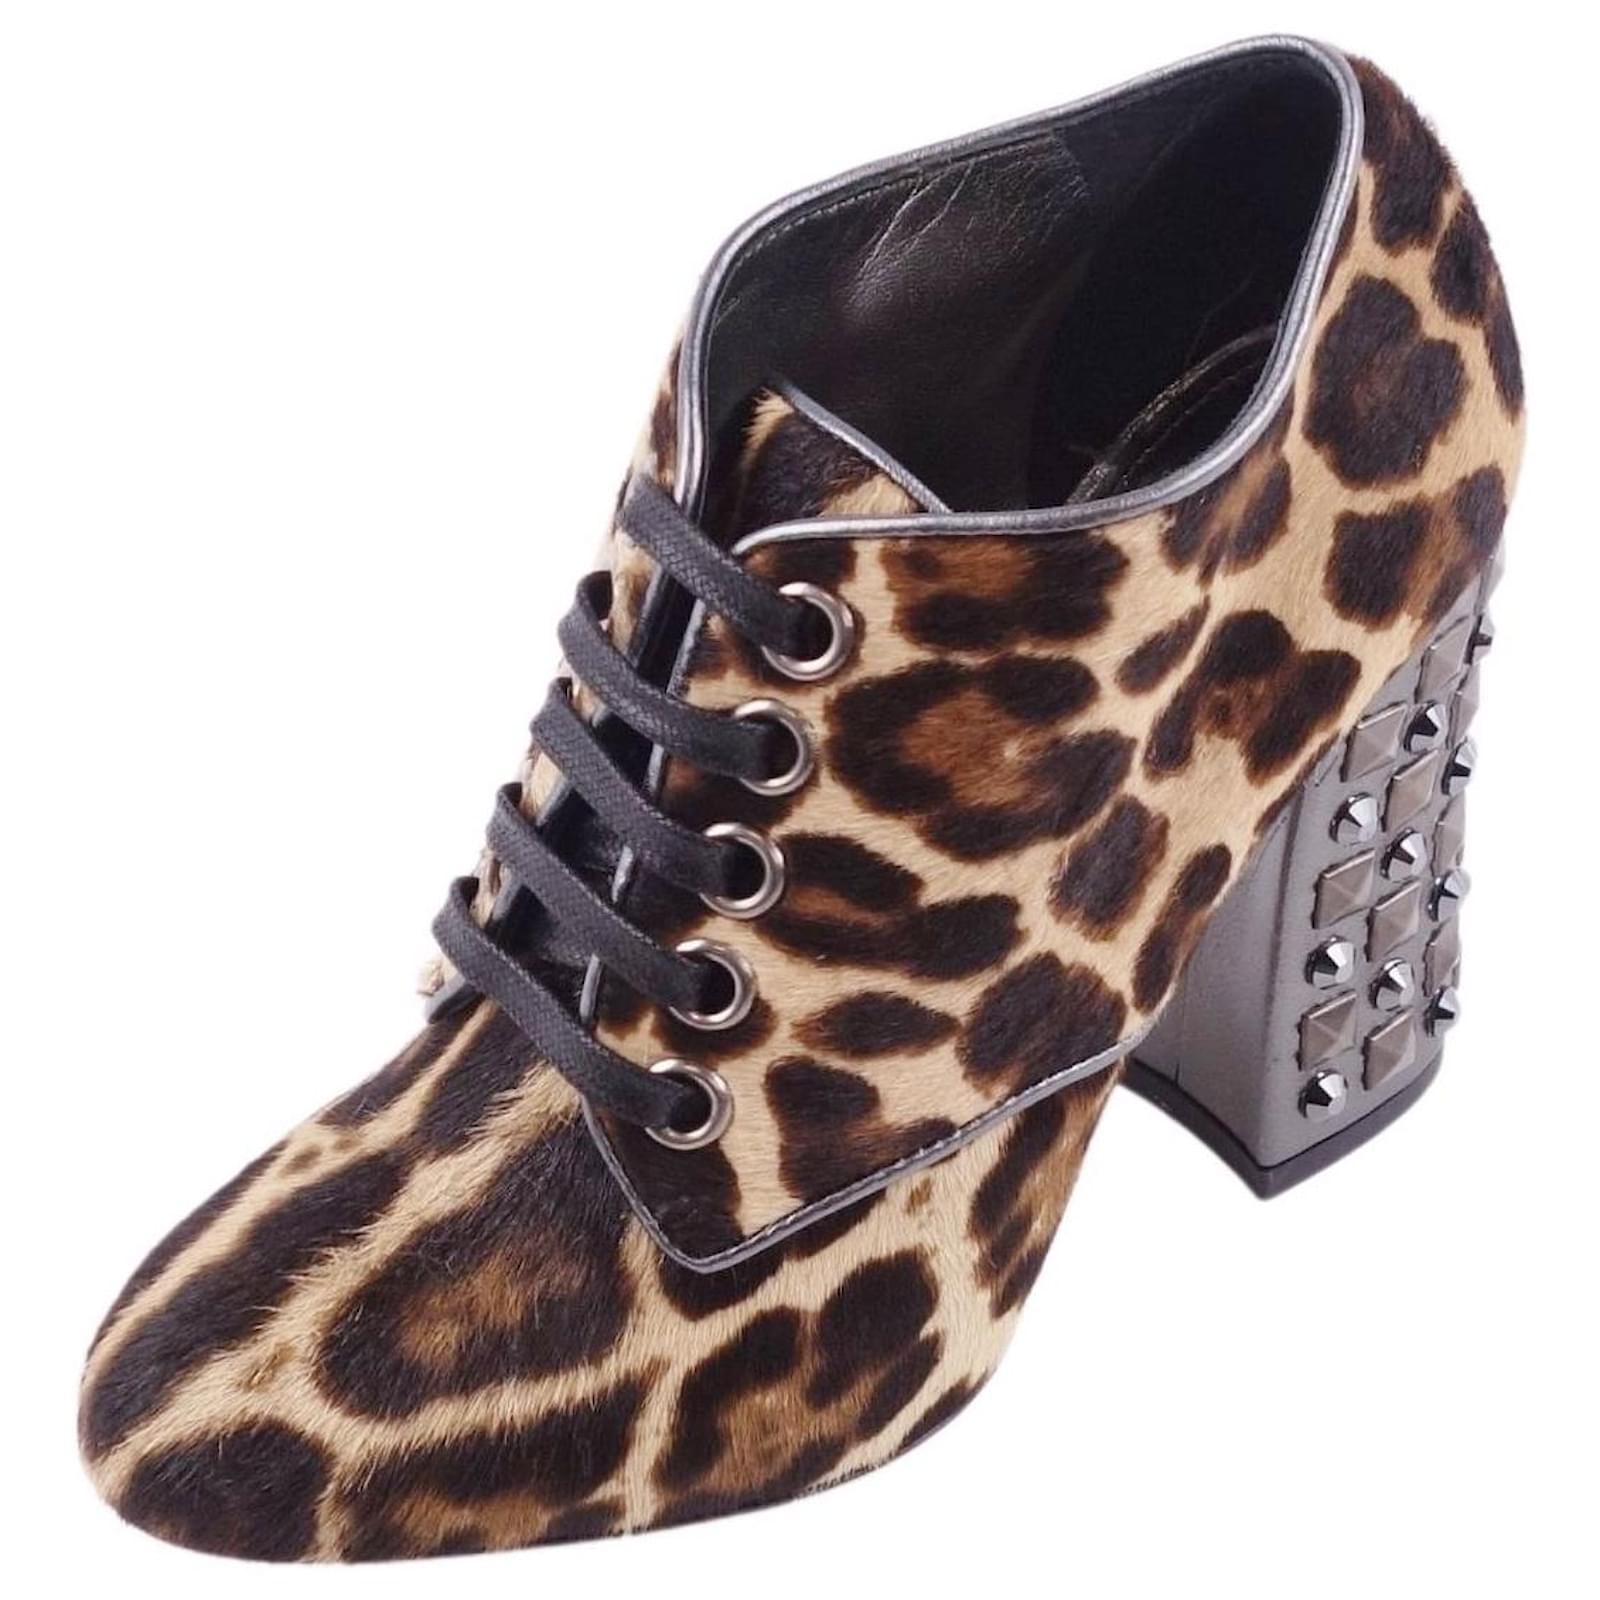 DOLCE & GABBANA Botines Leopardo Harako Cordones Tachuelas Tacón Zapatos Mujer Marrón Talla 35.5 (22.5cm equivalente) Castaño Cuero ref.446950 - Joli Closet